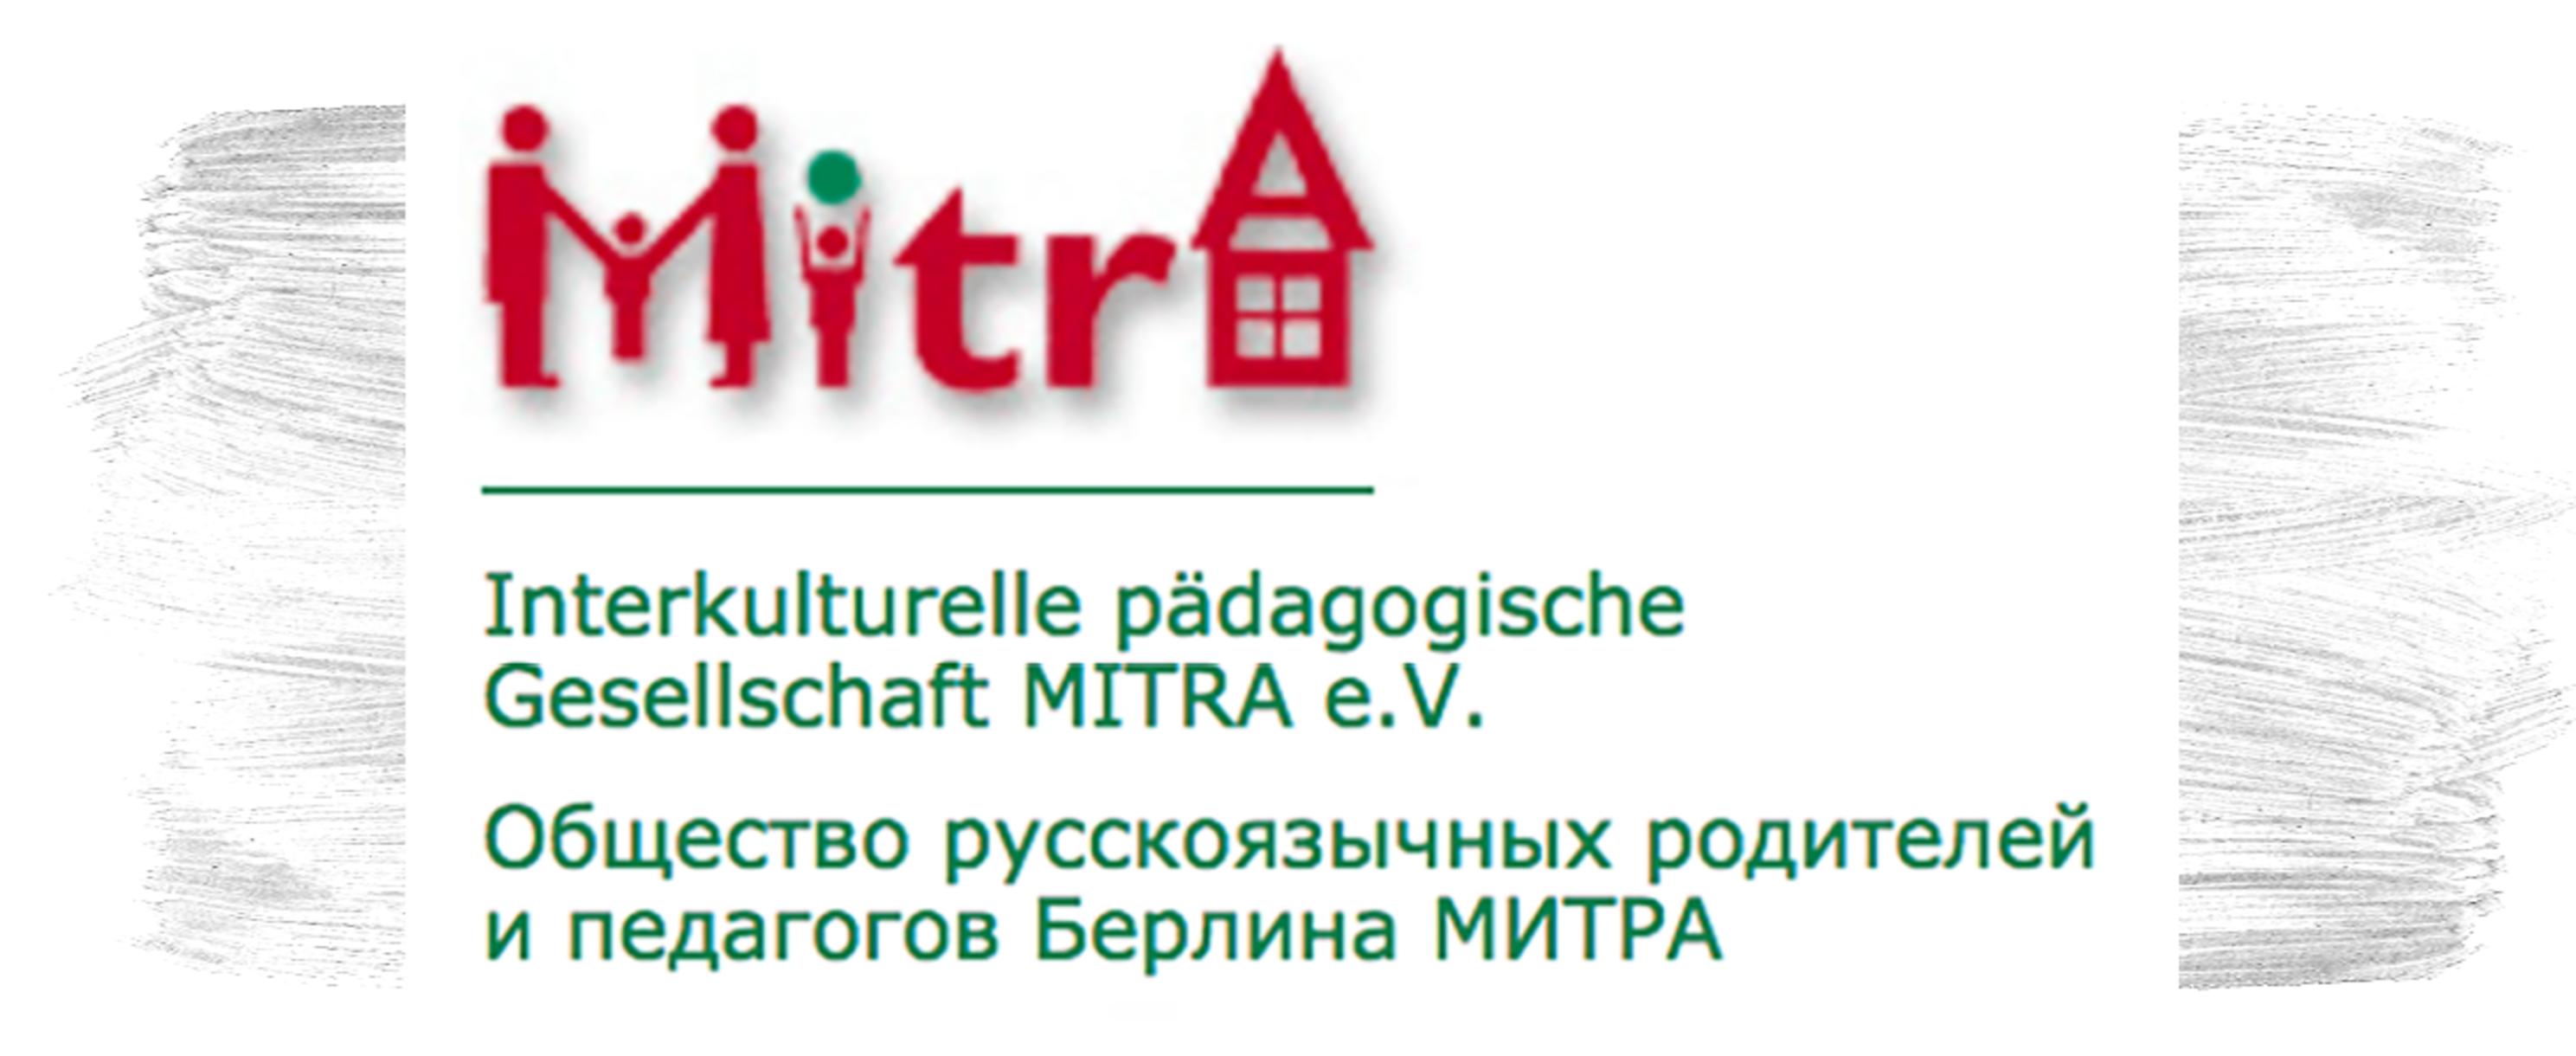 Interkulturelle pädagogische Gesellschaft MITRA e. V.